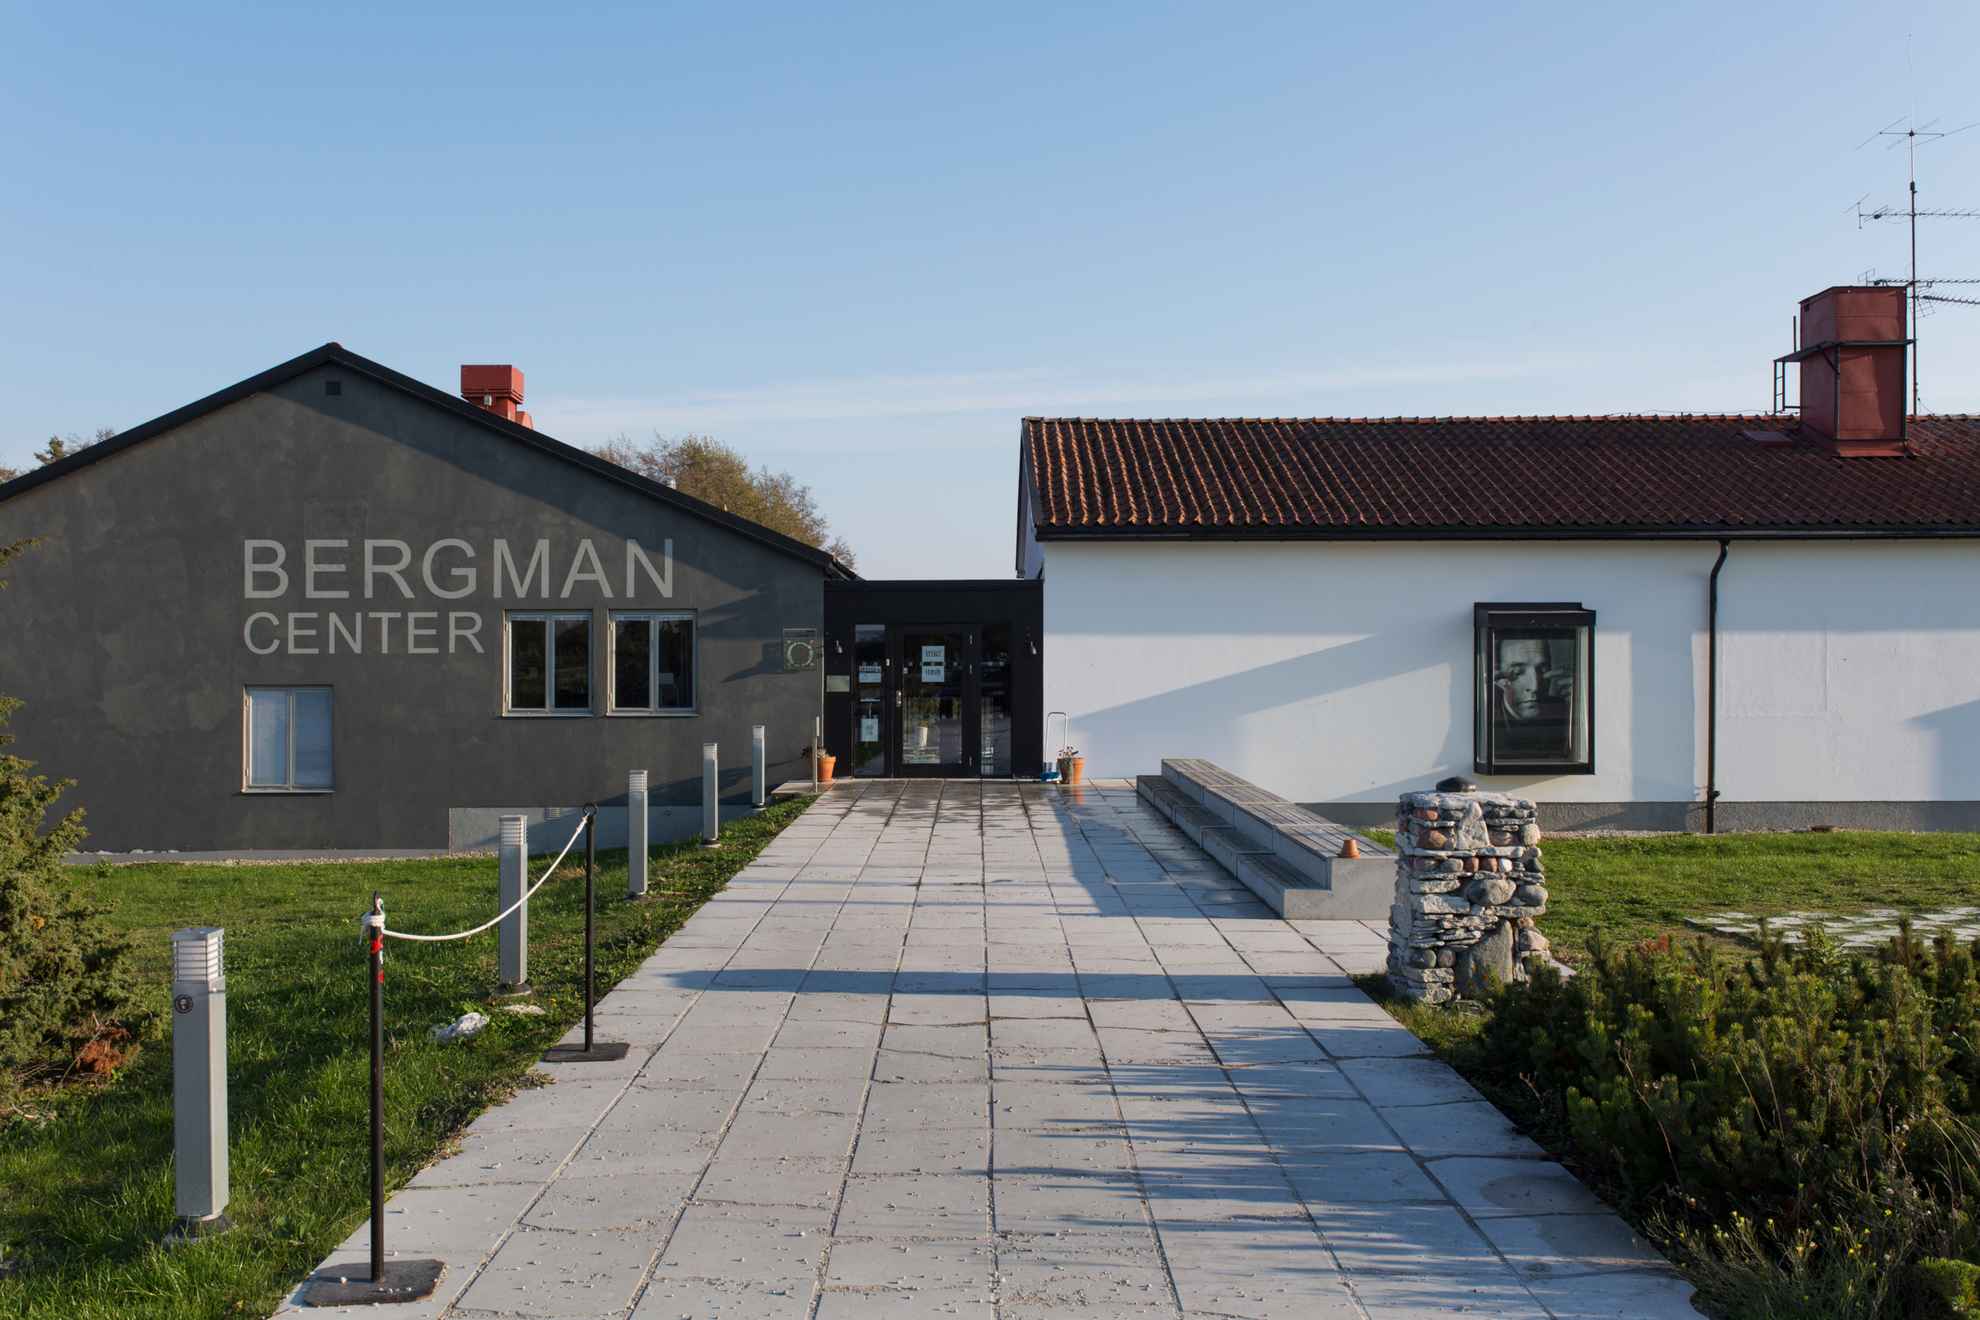 ""Bergman center" est inscrit sur un bâtiment gris à côté d'un bâtiment blanc.